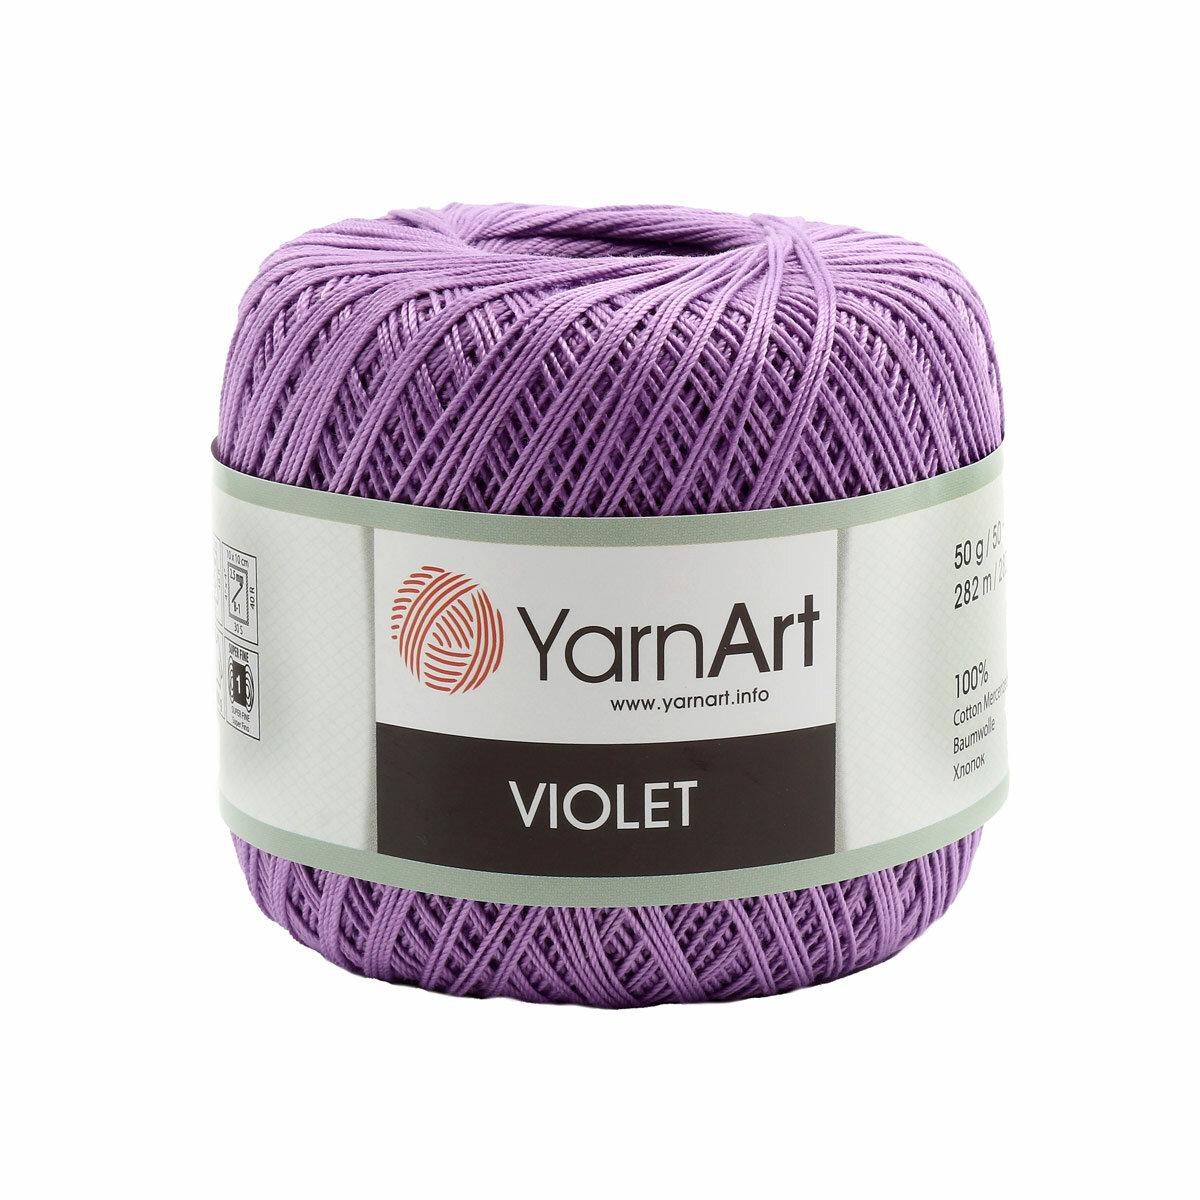 Пряжа для вязания YarnArt 'Violet' 50гр 282м (100% мерсеризованный хлопок) (6309 сирень), 6 мотков